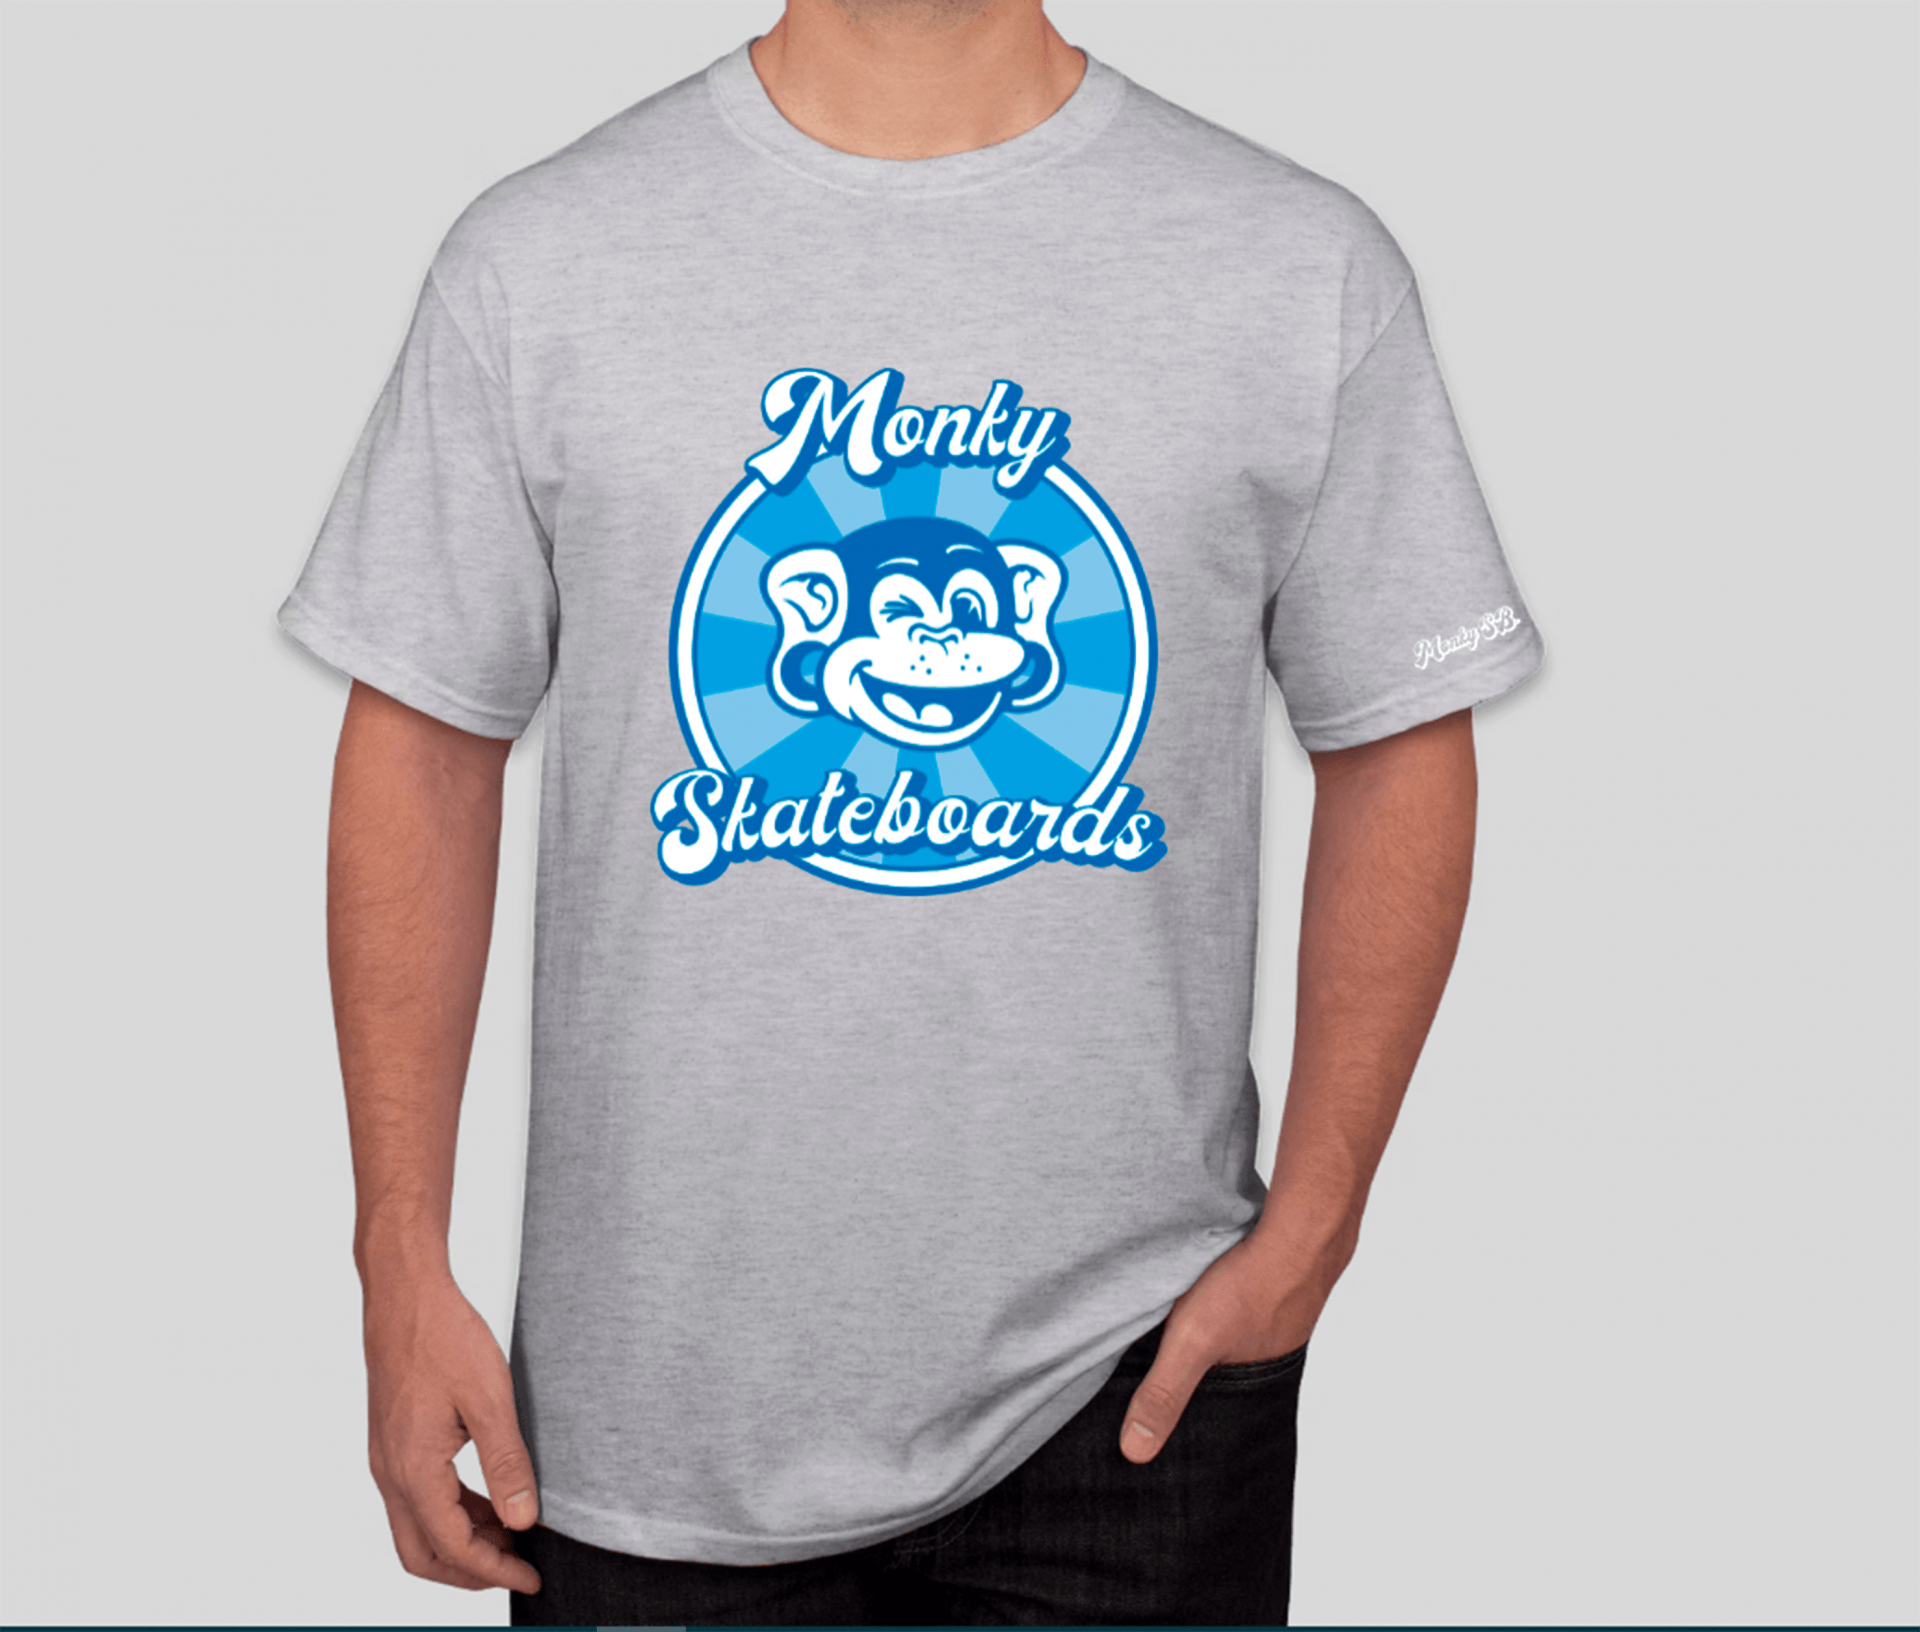 camiseta gris full logo en azul monky skateboards